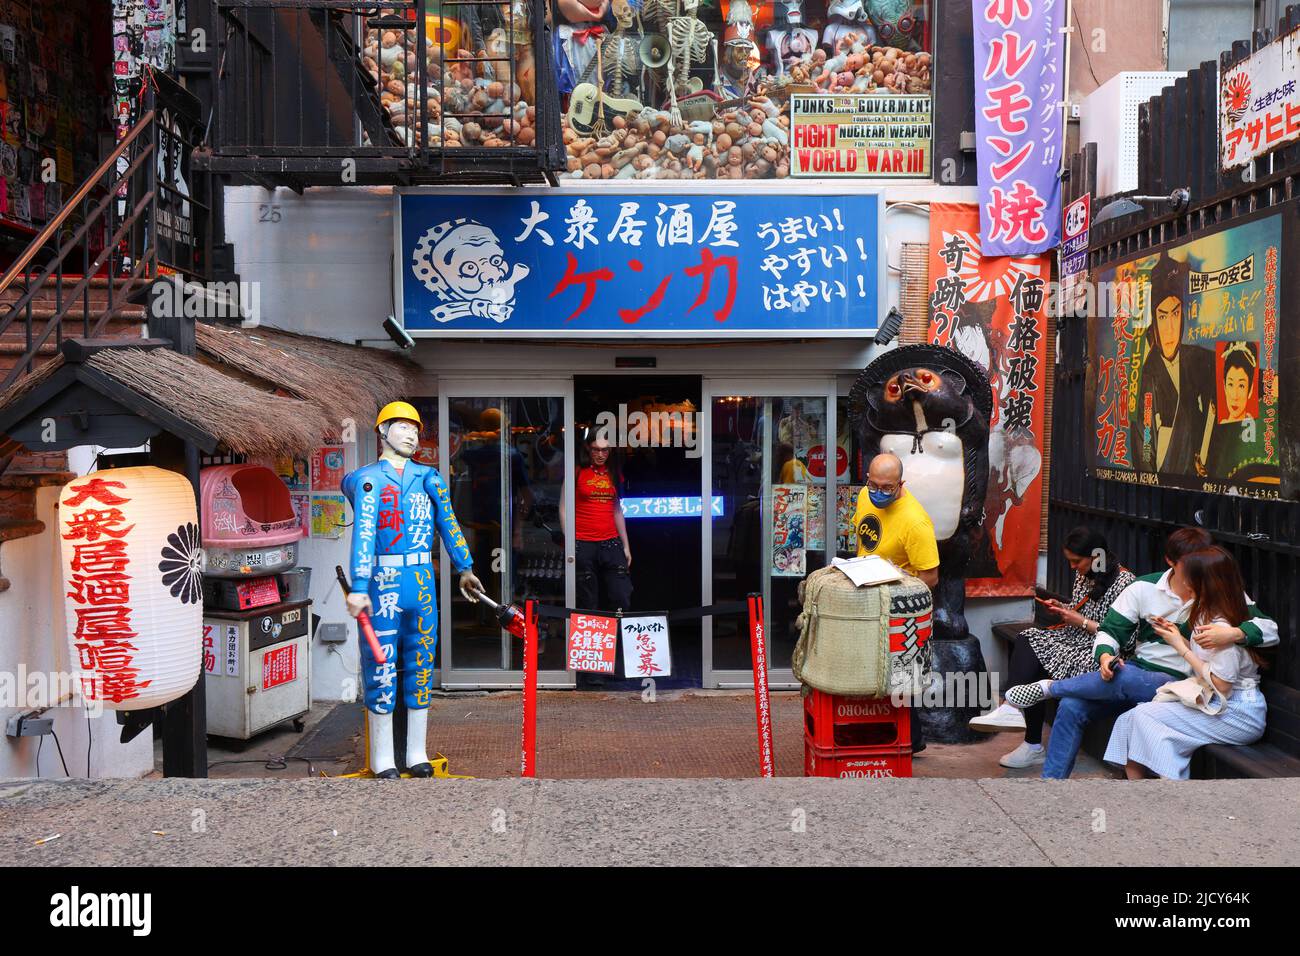 KENKA, 25 St. Marks Place, New York, foto del negozio di New York di un ristorante giapponese, izakaya nel quartiere 'Little Tokyo' East Village di Manhattan Foto Stock